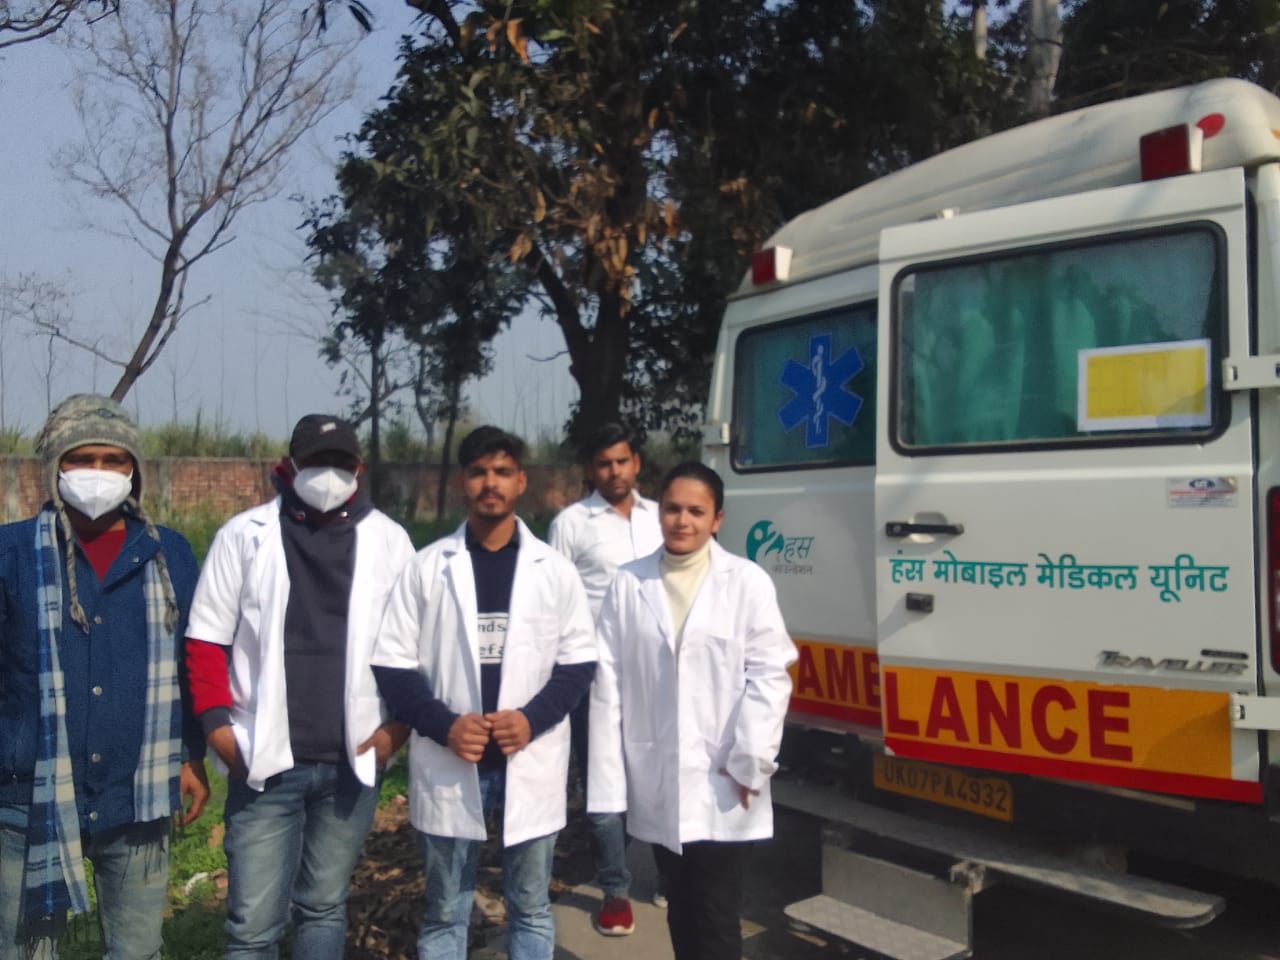 हंस फाउंडेशन की मोबाइल मेडिकल यूनिट ने ग्रामीणों के खून की जांच कर बांटी निशुल्क दवाएं